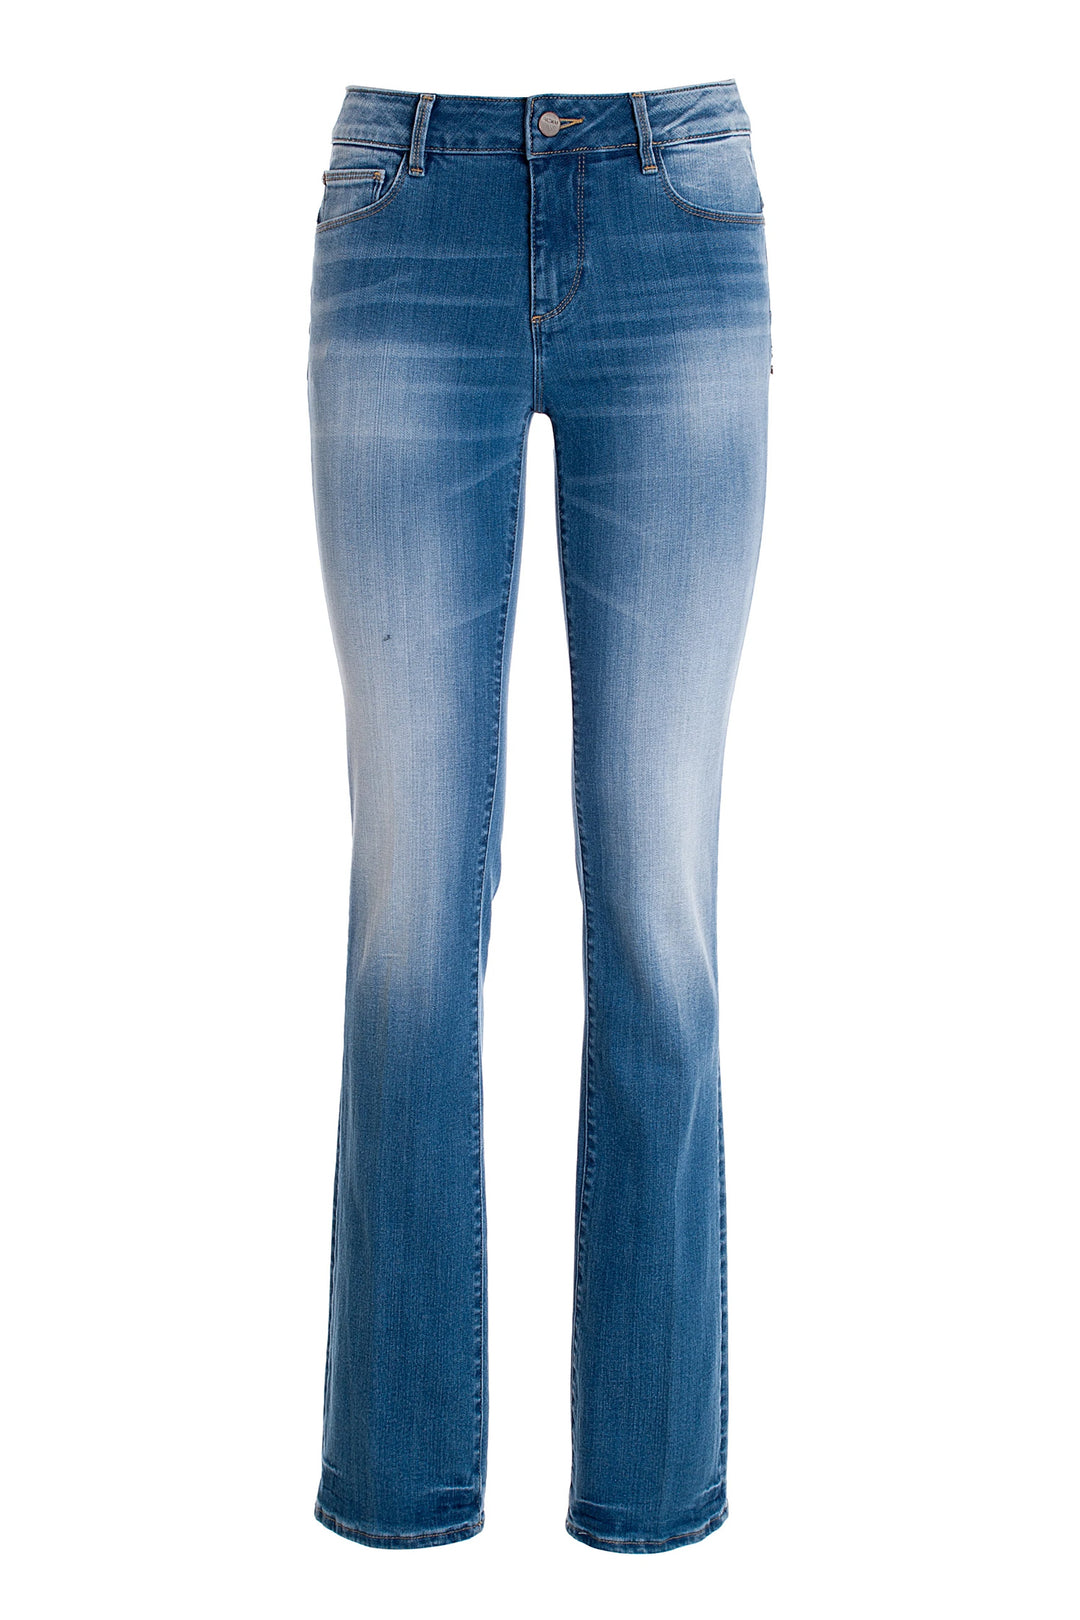 FRACOMINA Jeans bootcut effetto push up in denim con lavaggio medio - Mancinelli 1954